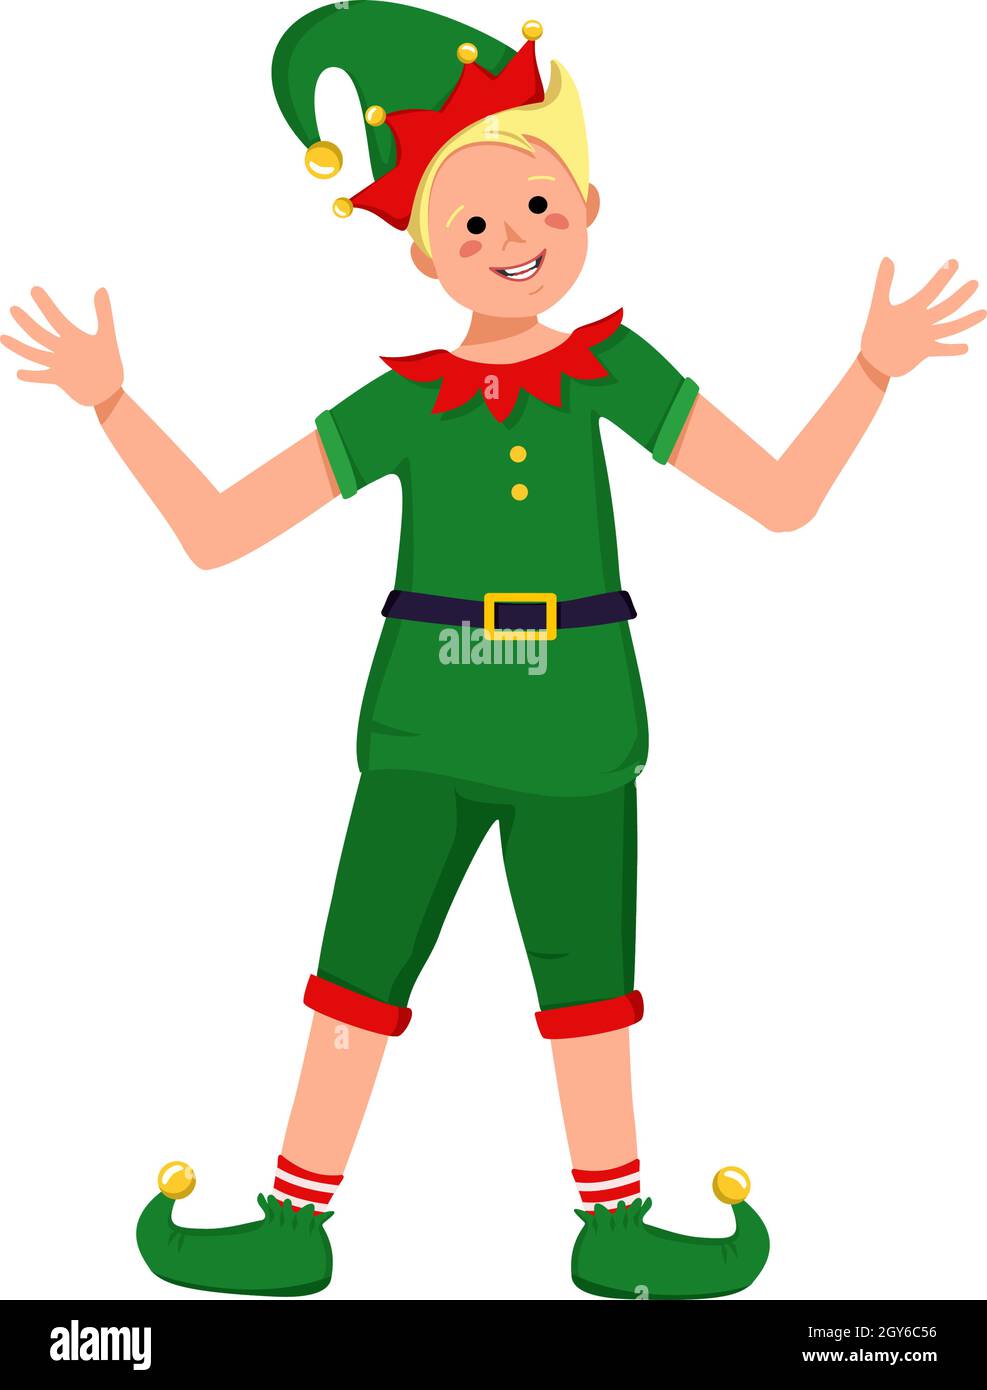 Niedlicher Junge mit glücklichem Gesicht und Augen im festlichen Elfkostüm zu Weihnachten, Neujahr oder Urlaub Stock Vektor